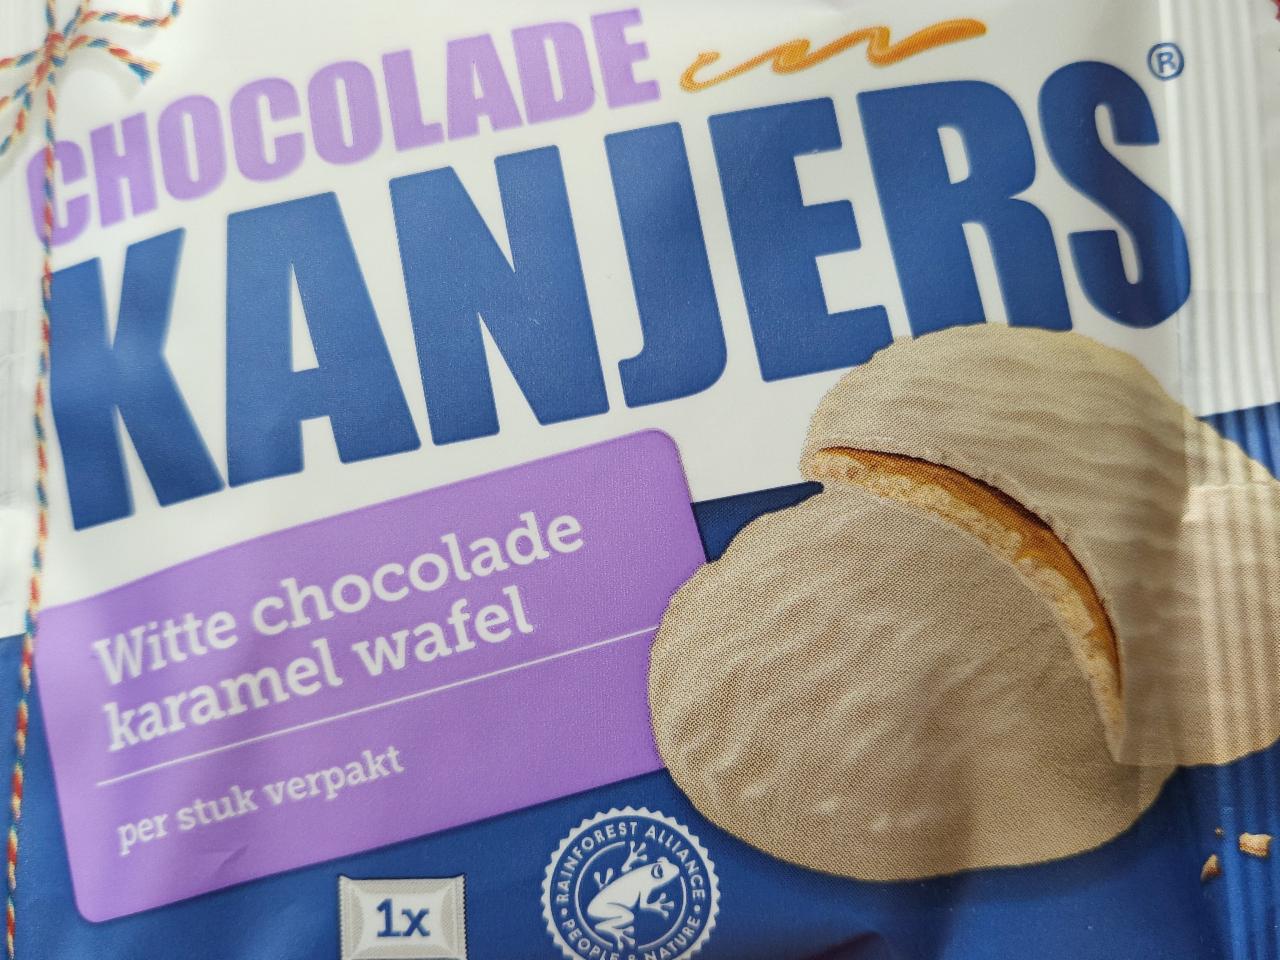 Fotografie - Kanjers chocolade